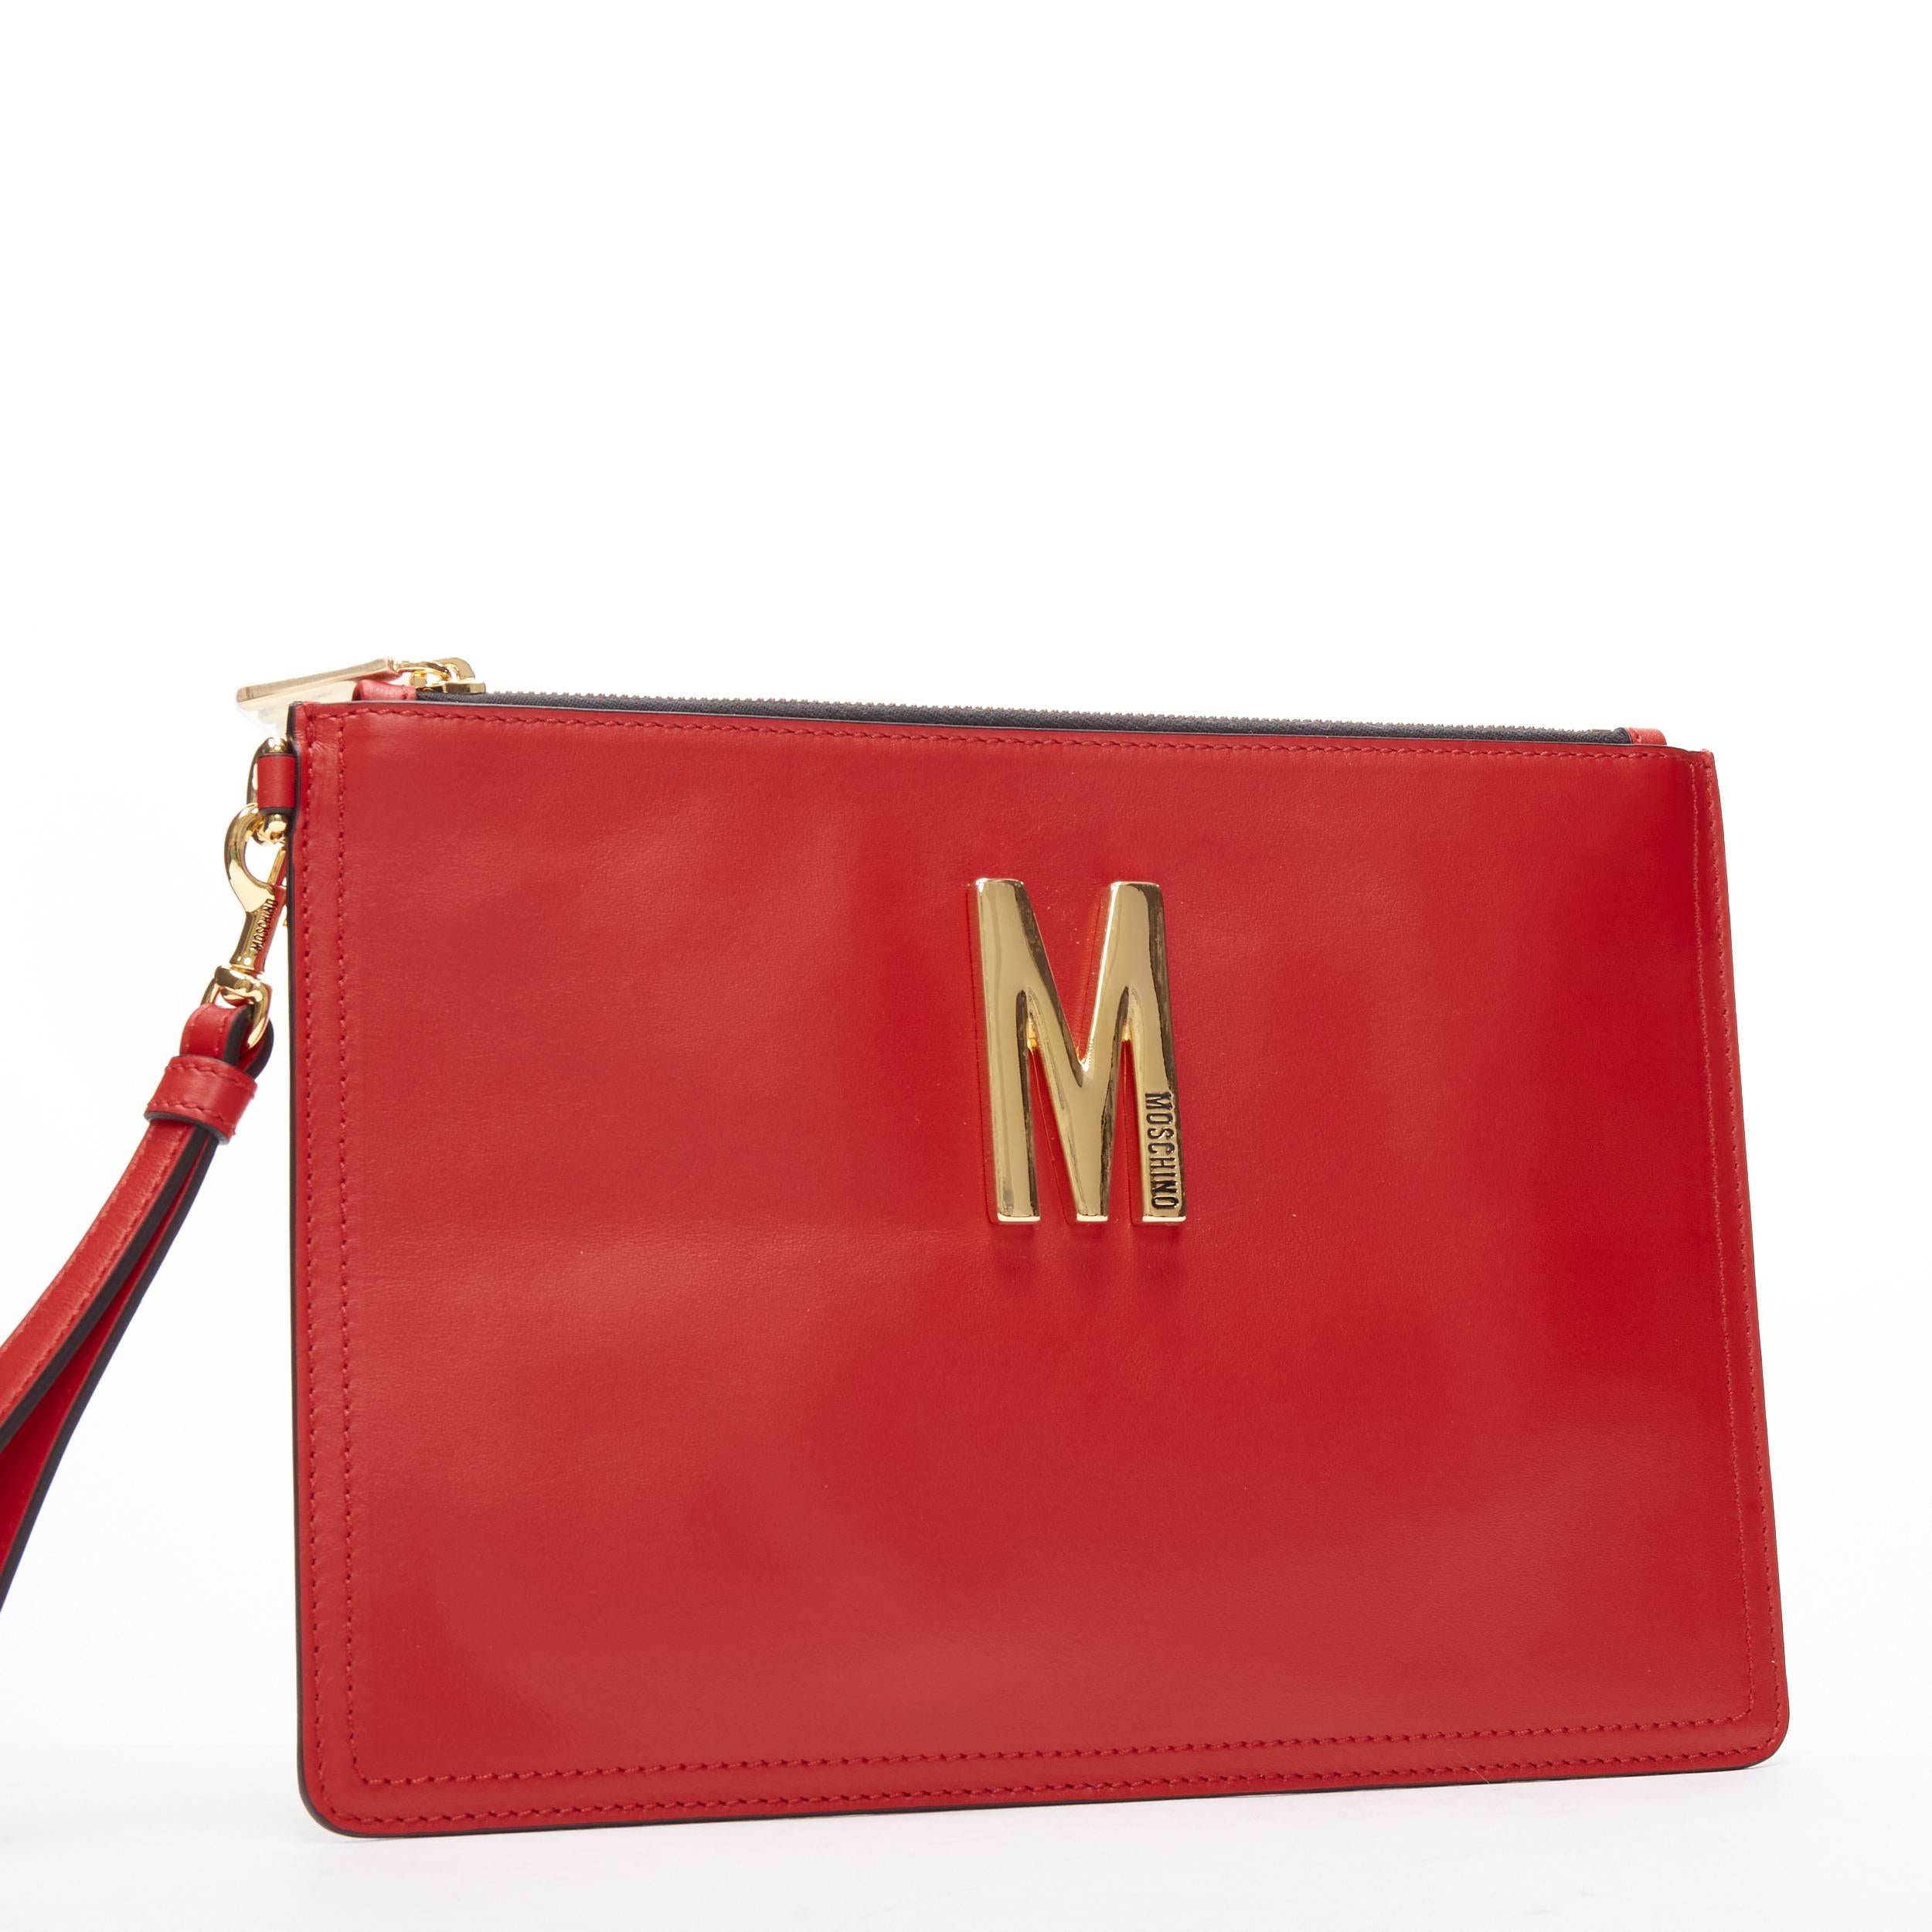 MOSCHINO Couture! glänzendes rotes Leder mit goldenem M-Reißverschluss am Handgelenk (Rot) im Angebot